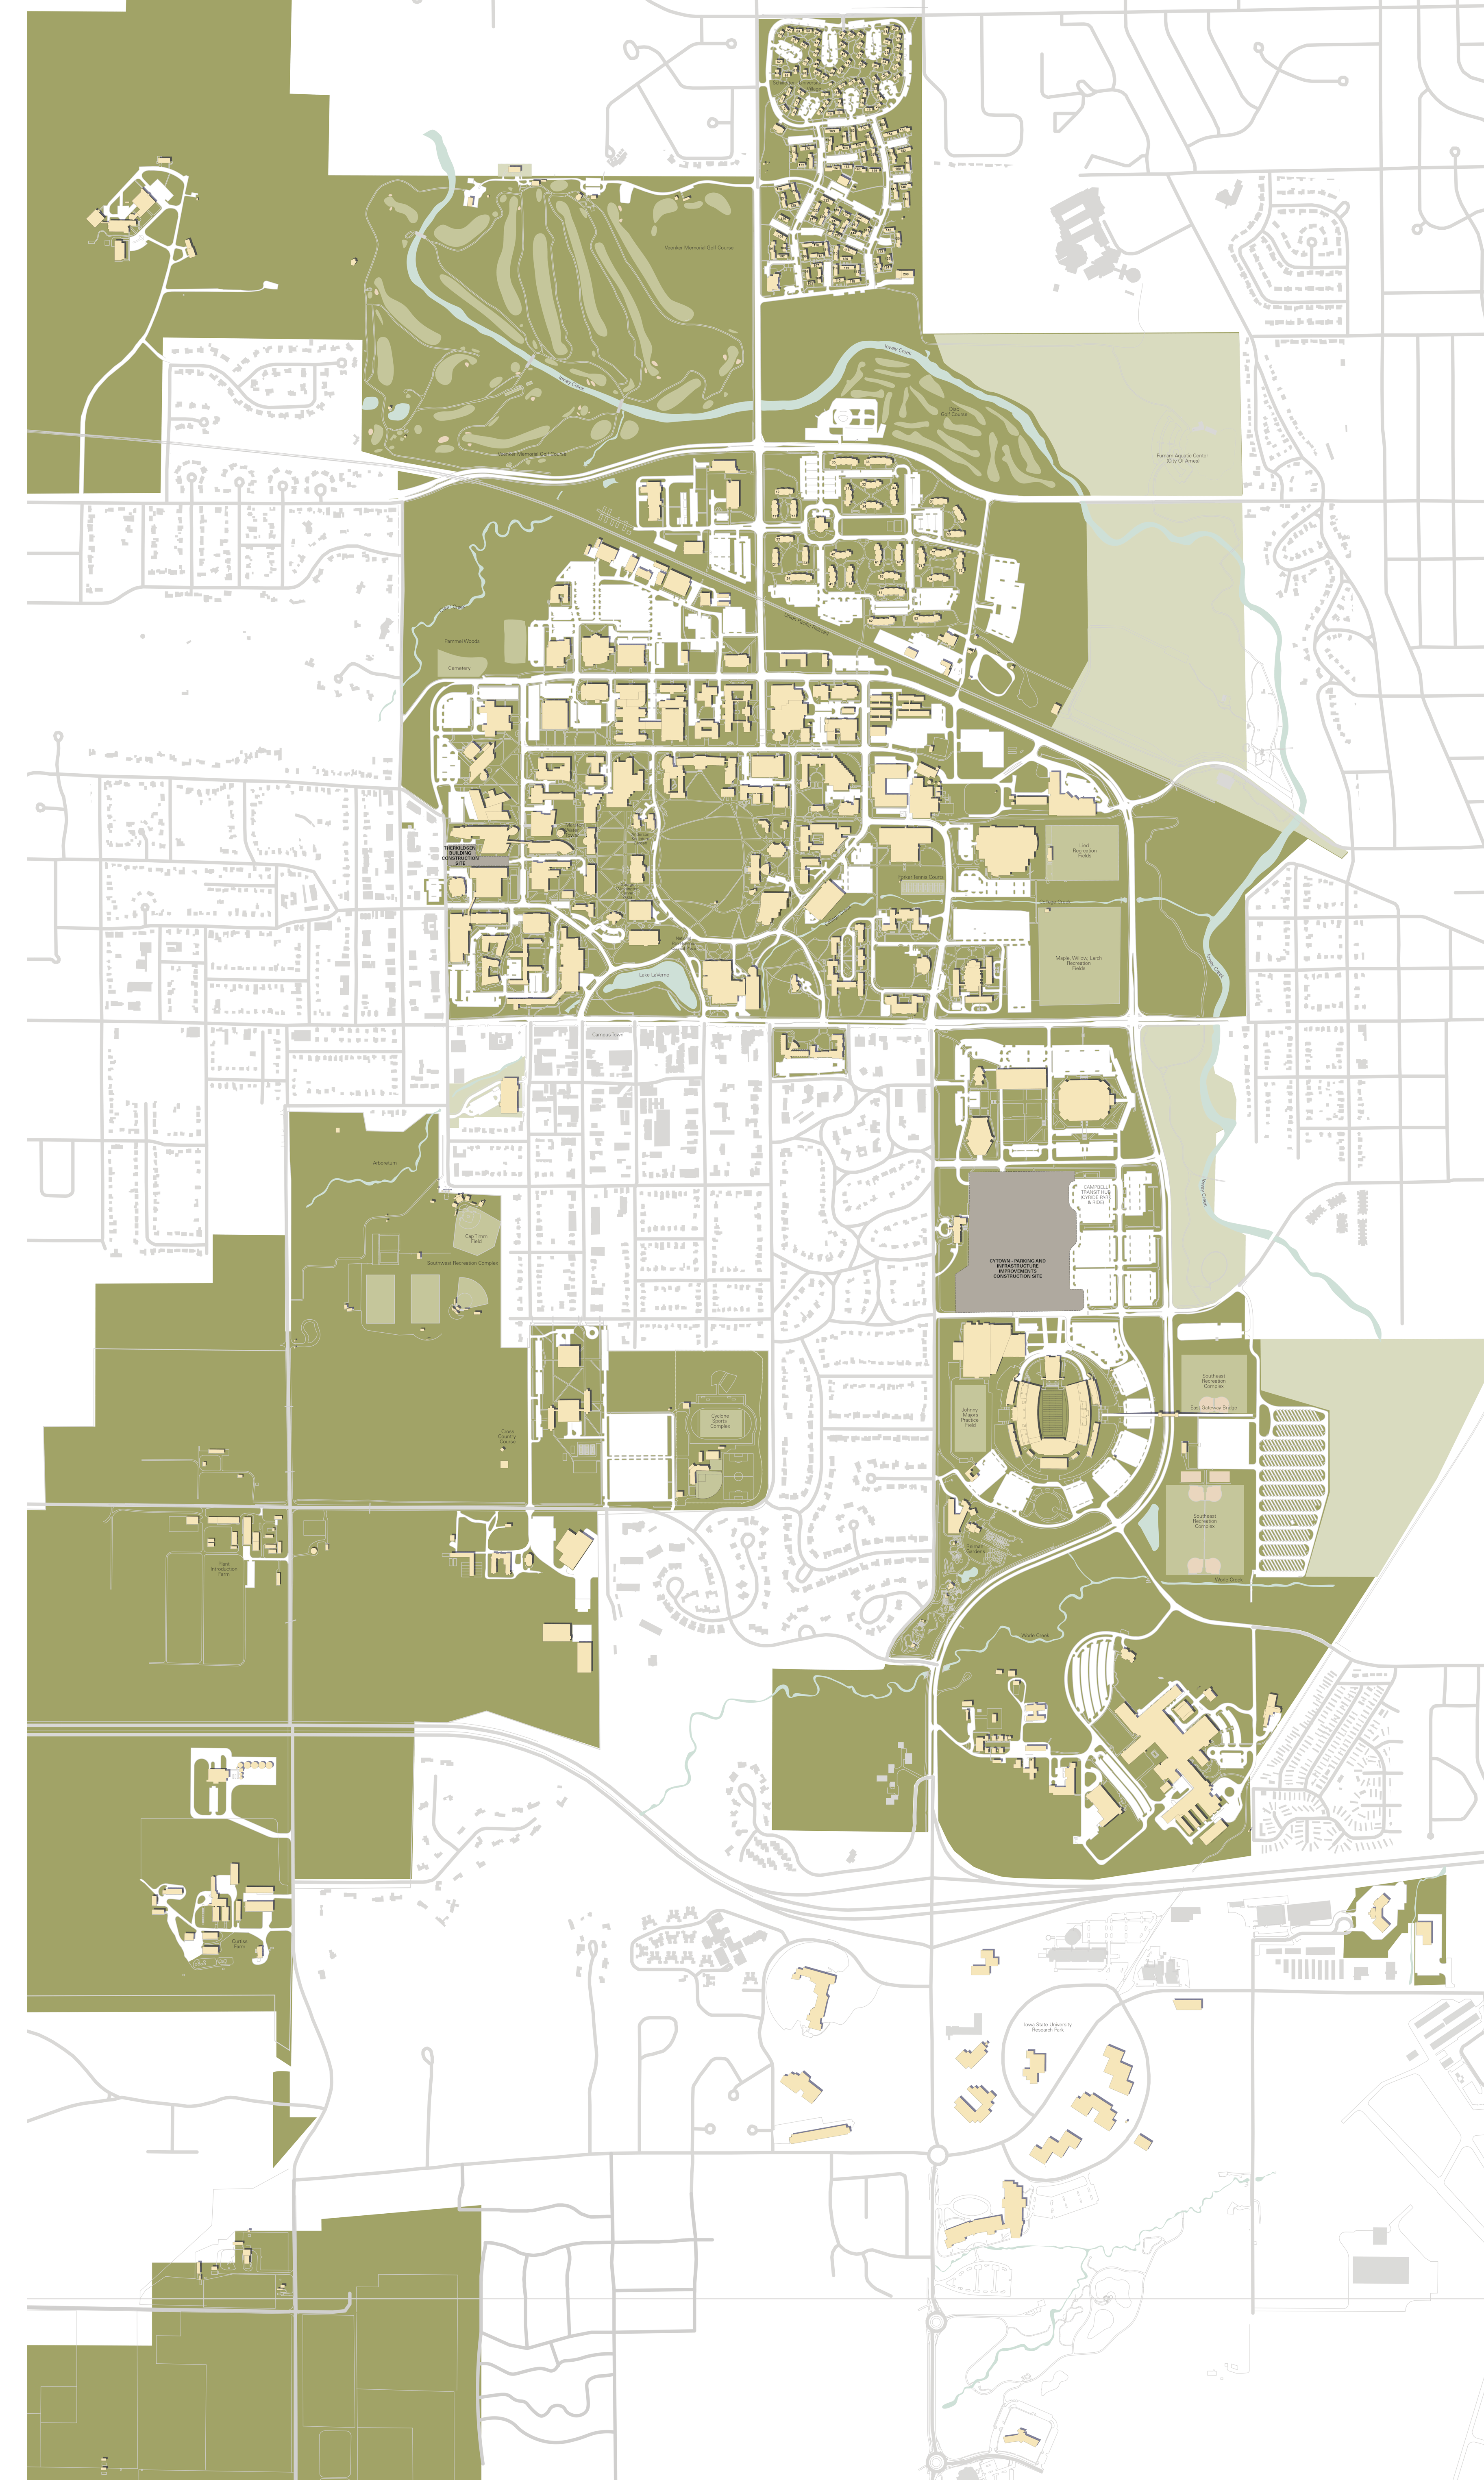 Isu Online Campus Map